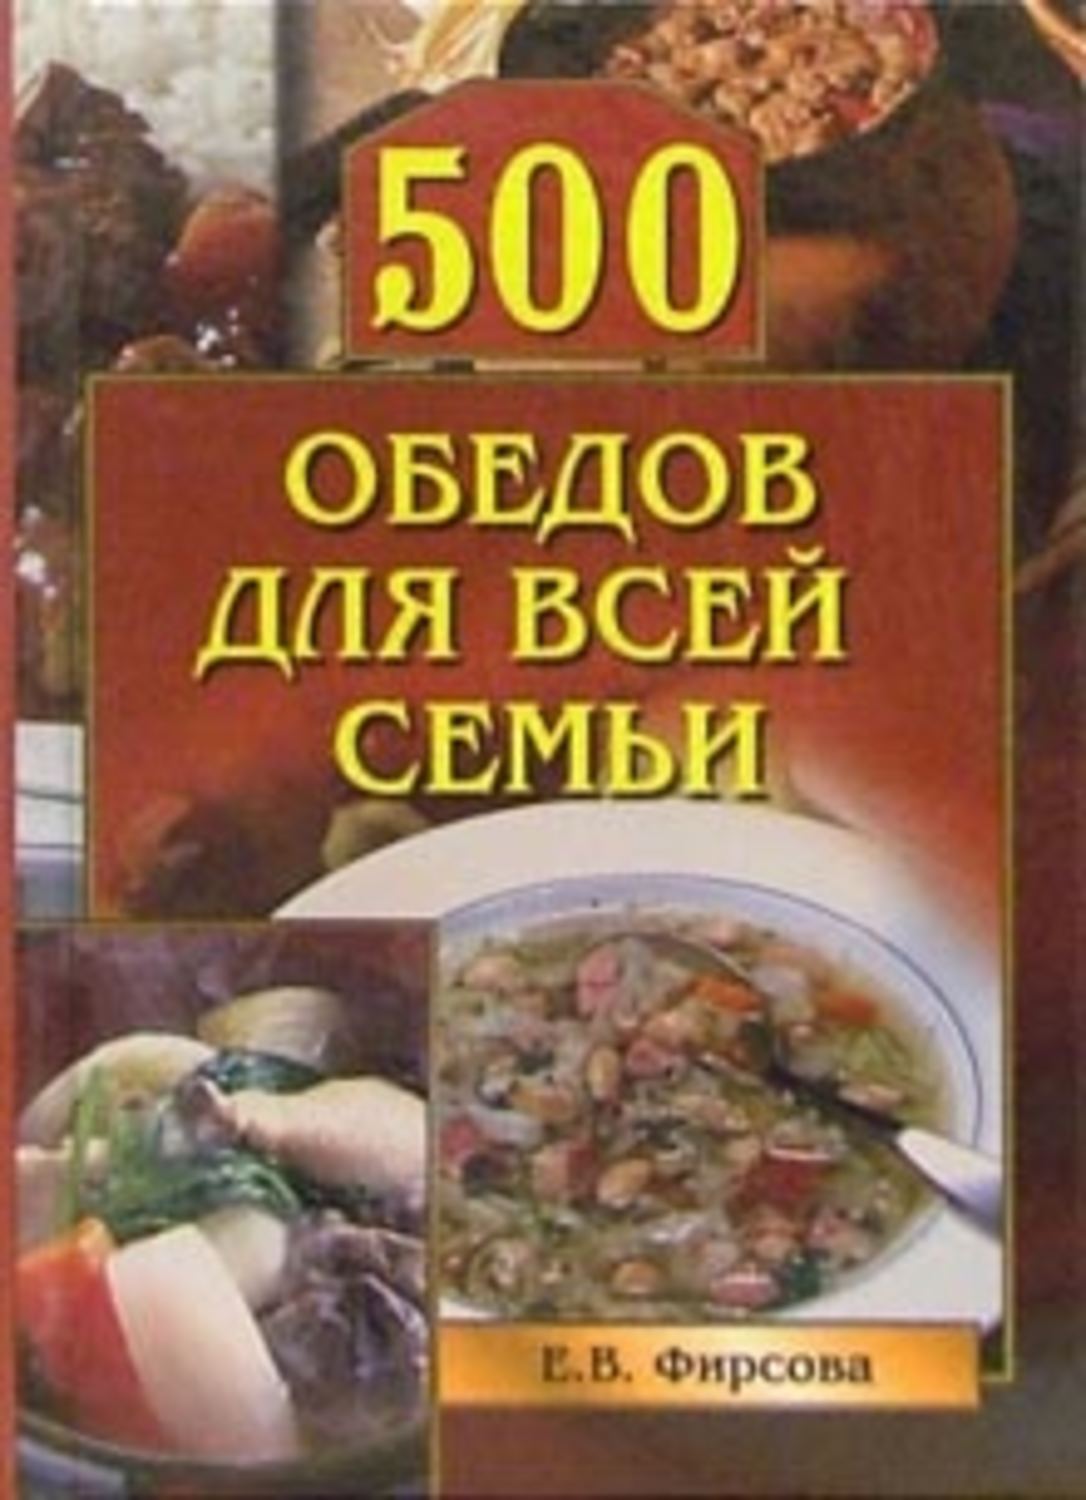 Книга 500 слов. Книга семейные обеды. Книга обед. Книга советы по кулинарии. Книга 500 страниц.